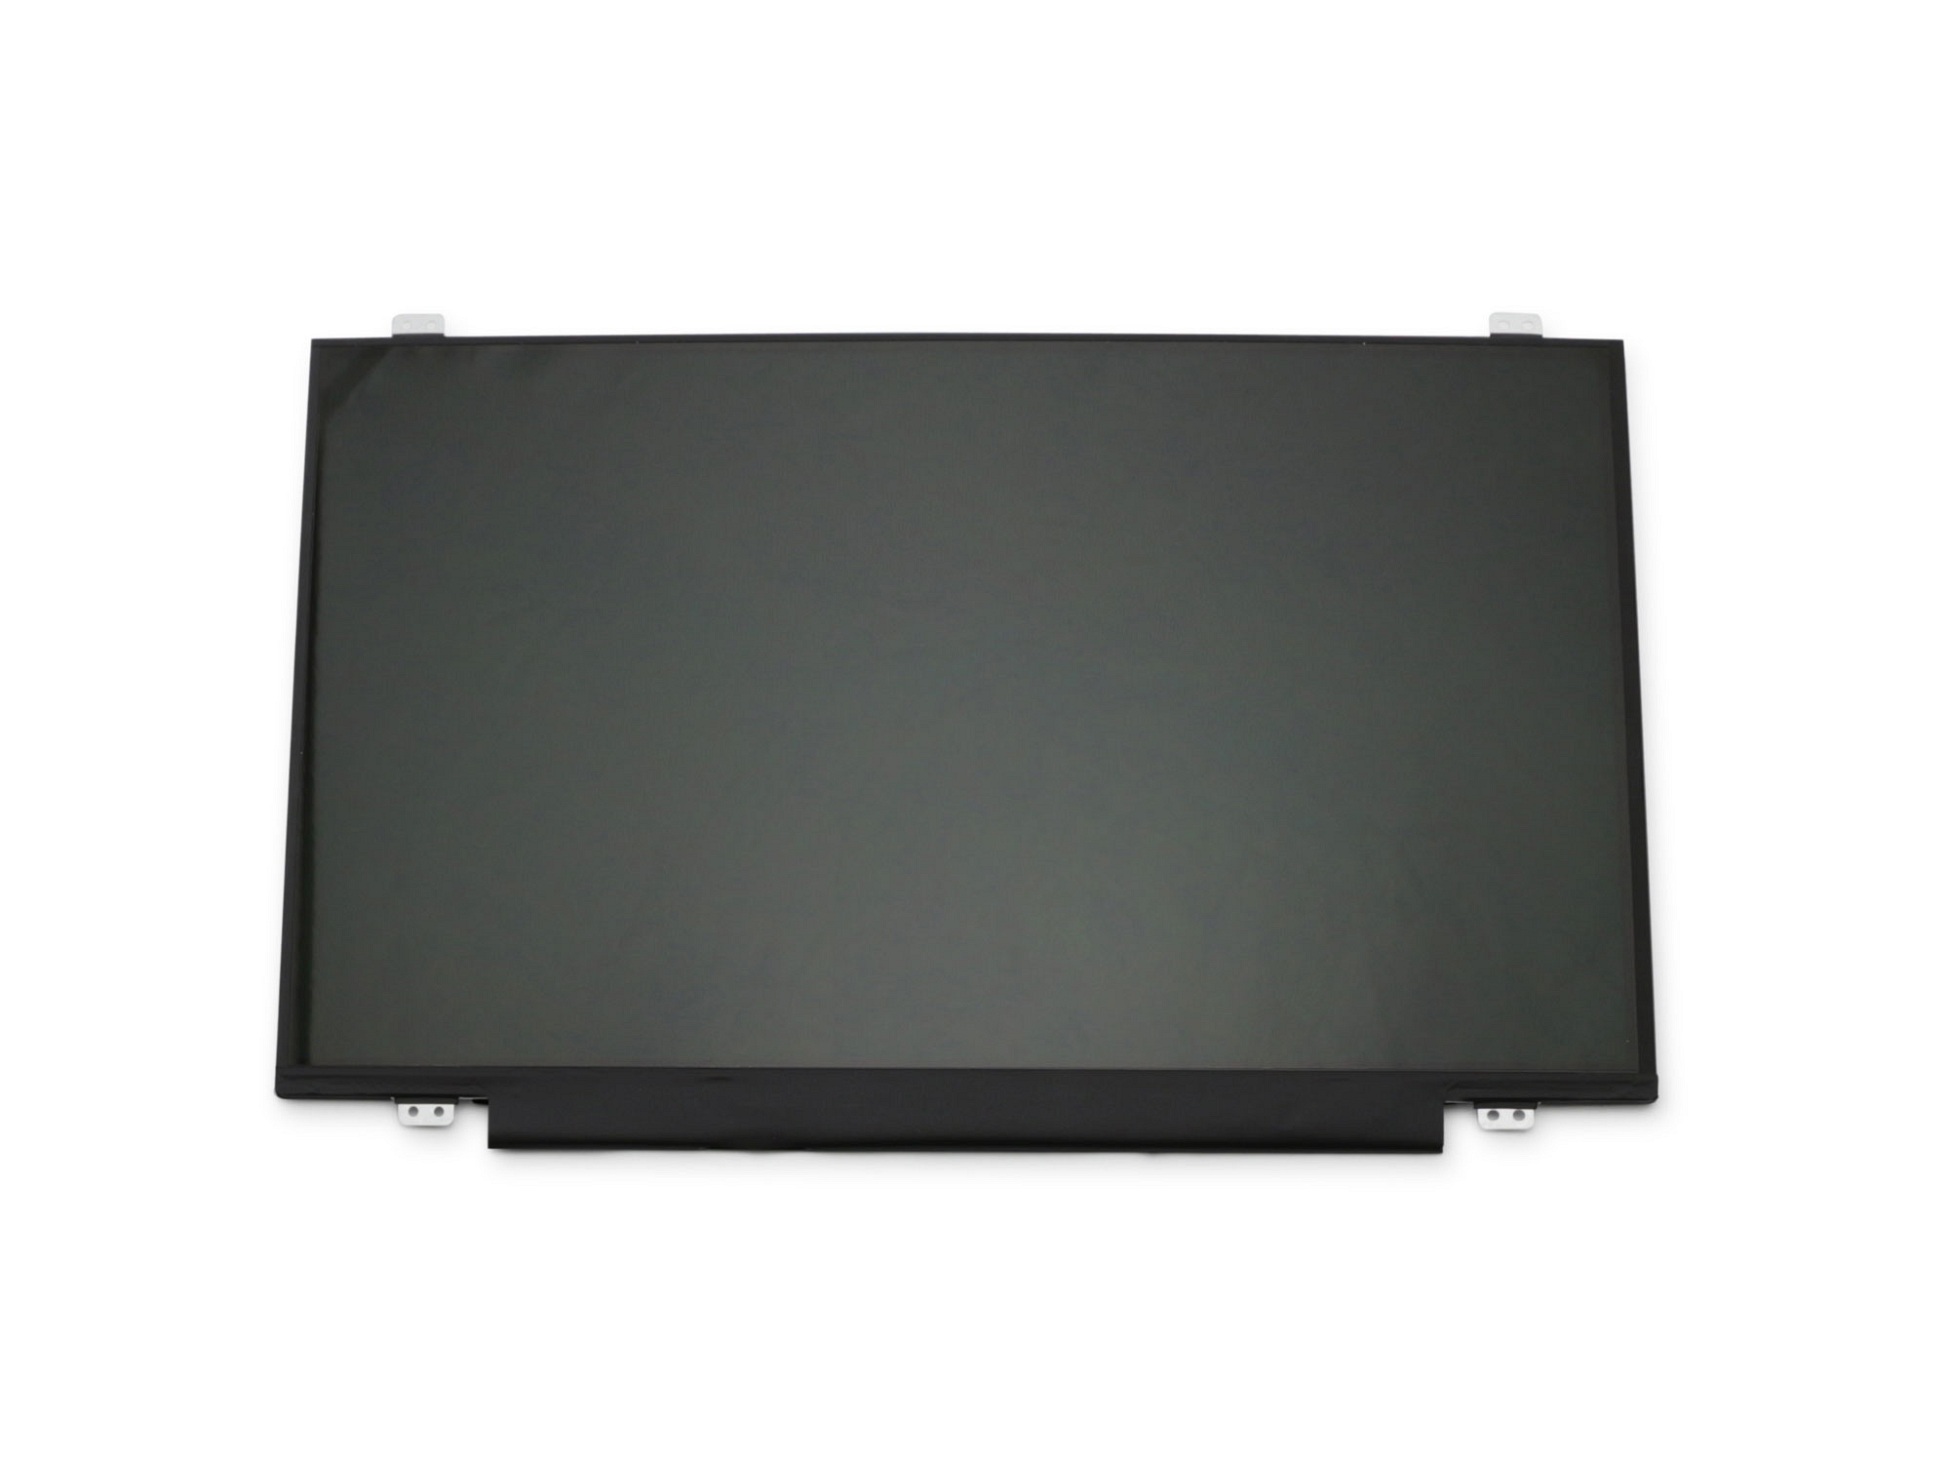 LG LP140WH8-TPD1 Display (1366x768) glänzend slimline